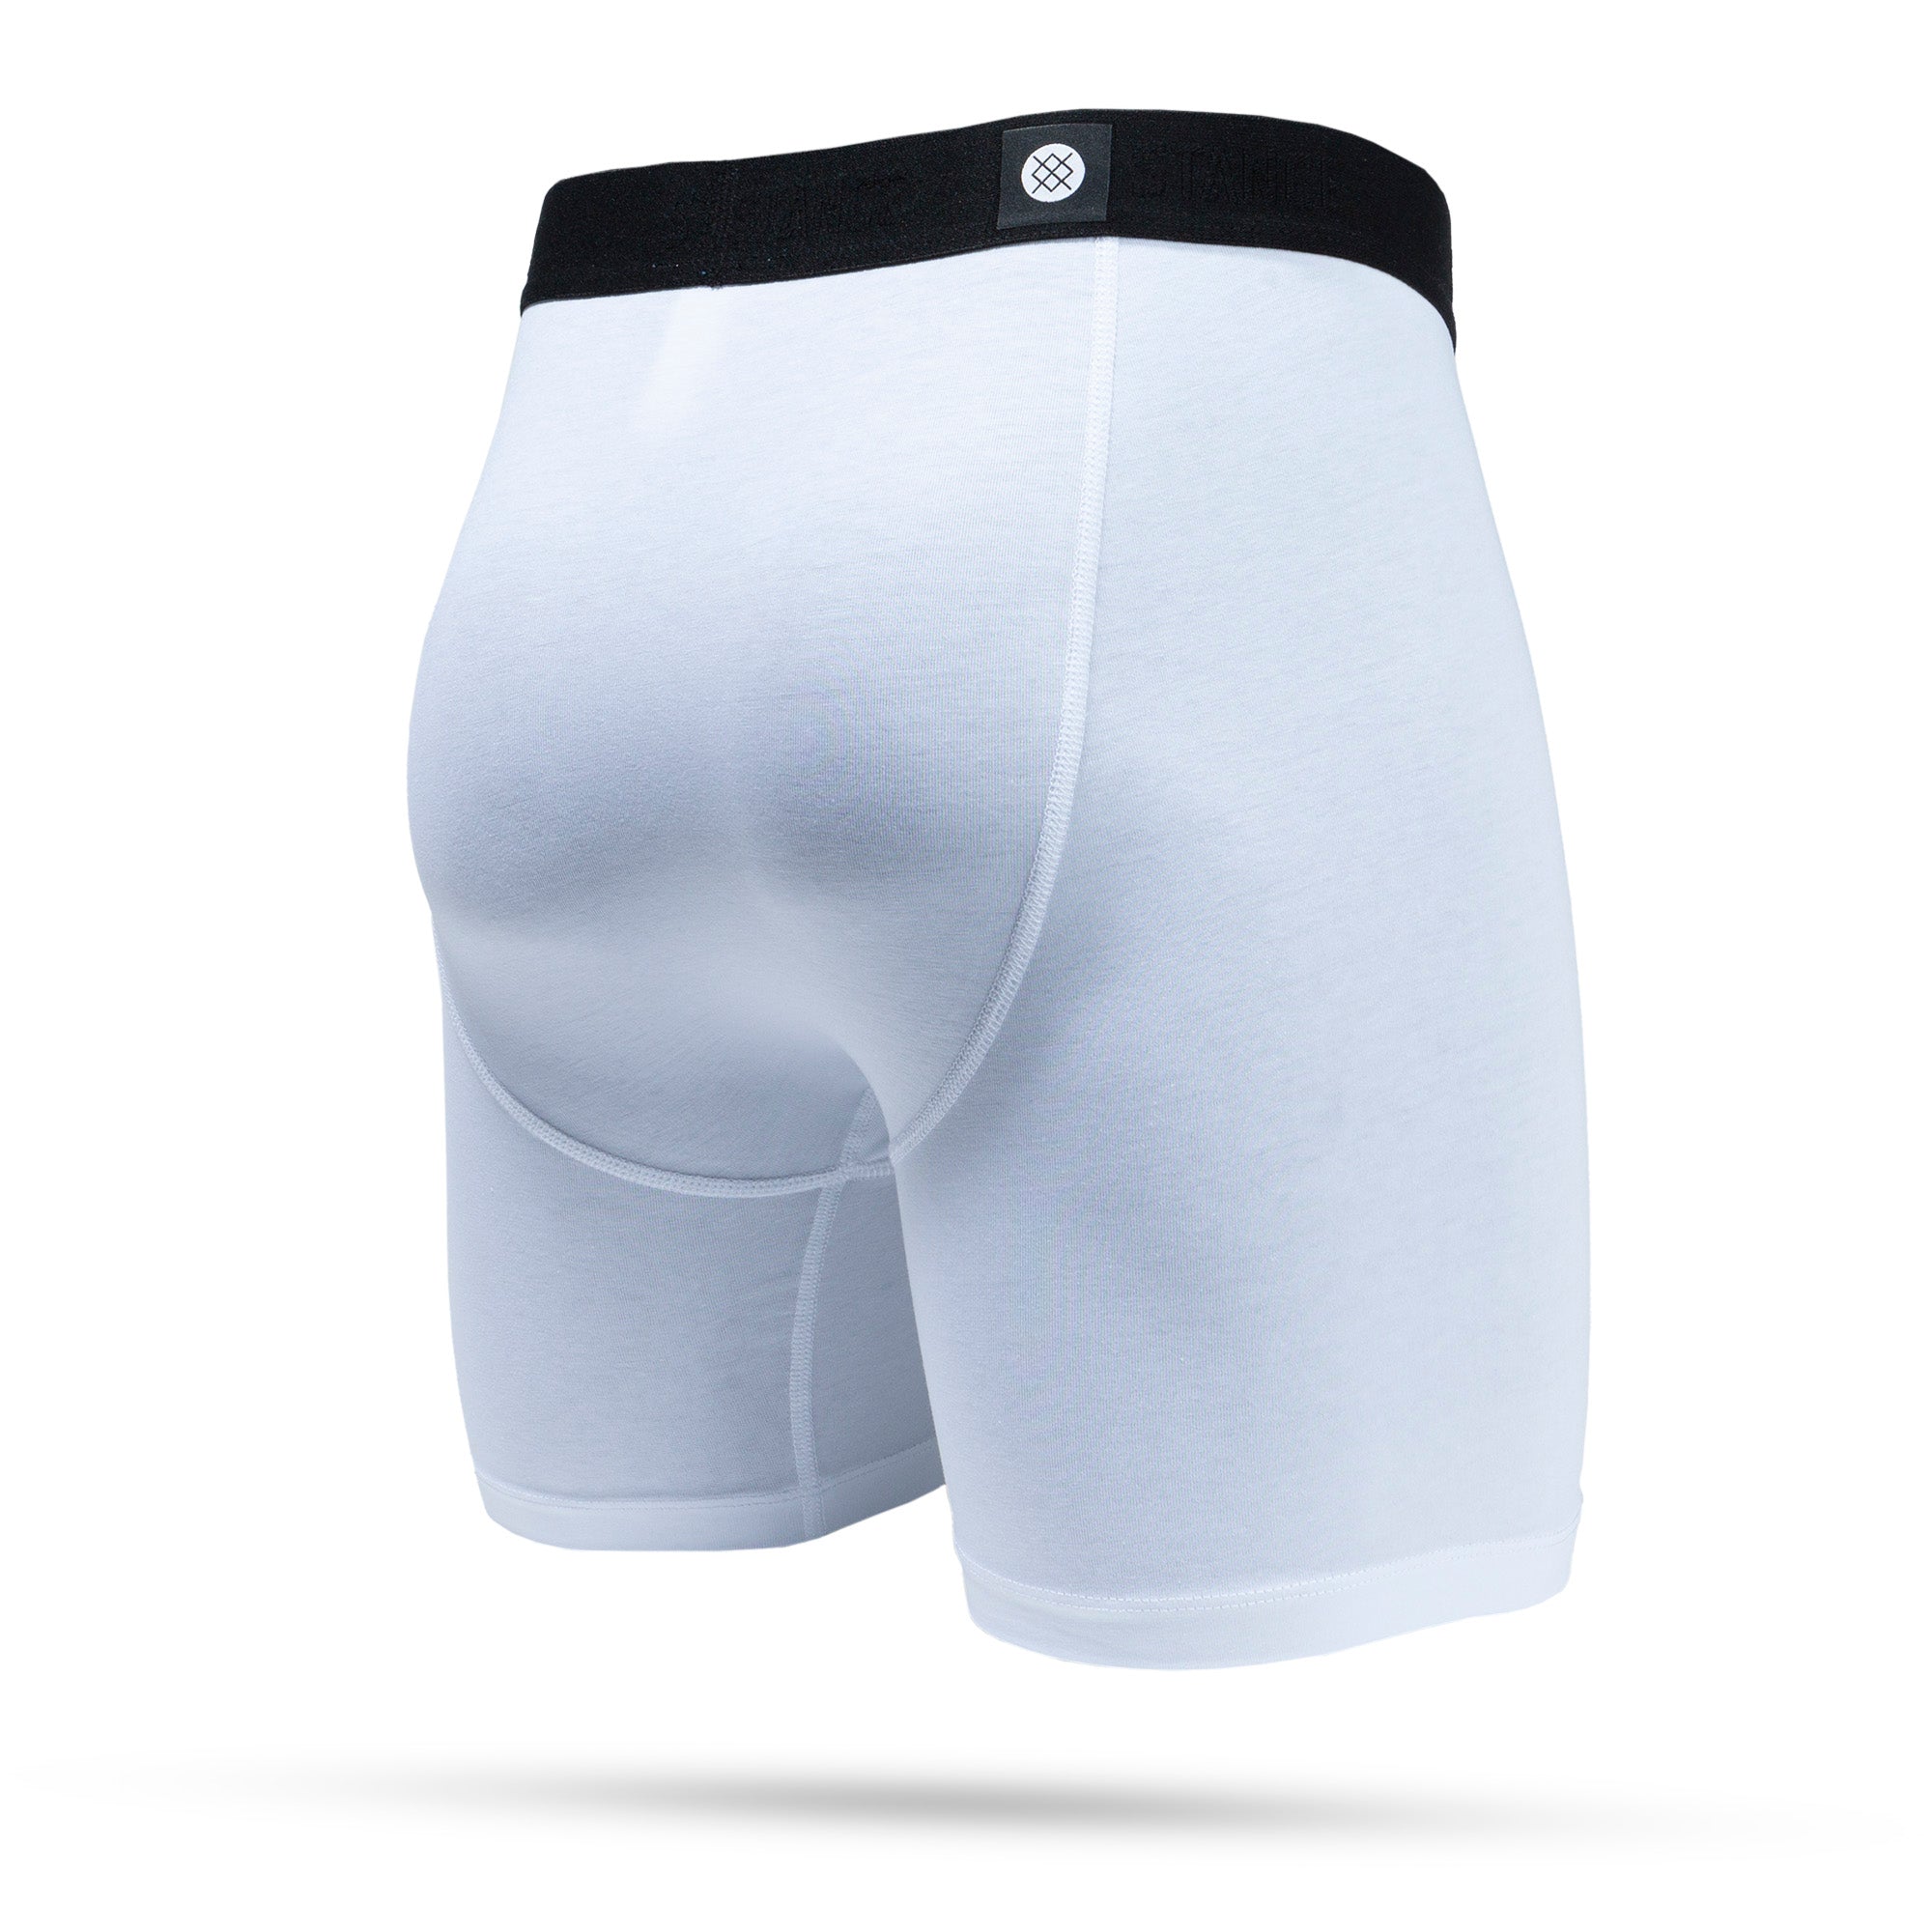 Stance, Underwear & Socks, Stance Boxer Briefs Grey Mens Size Medium